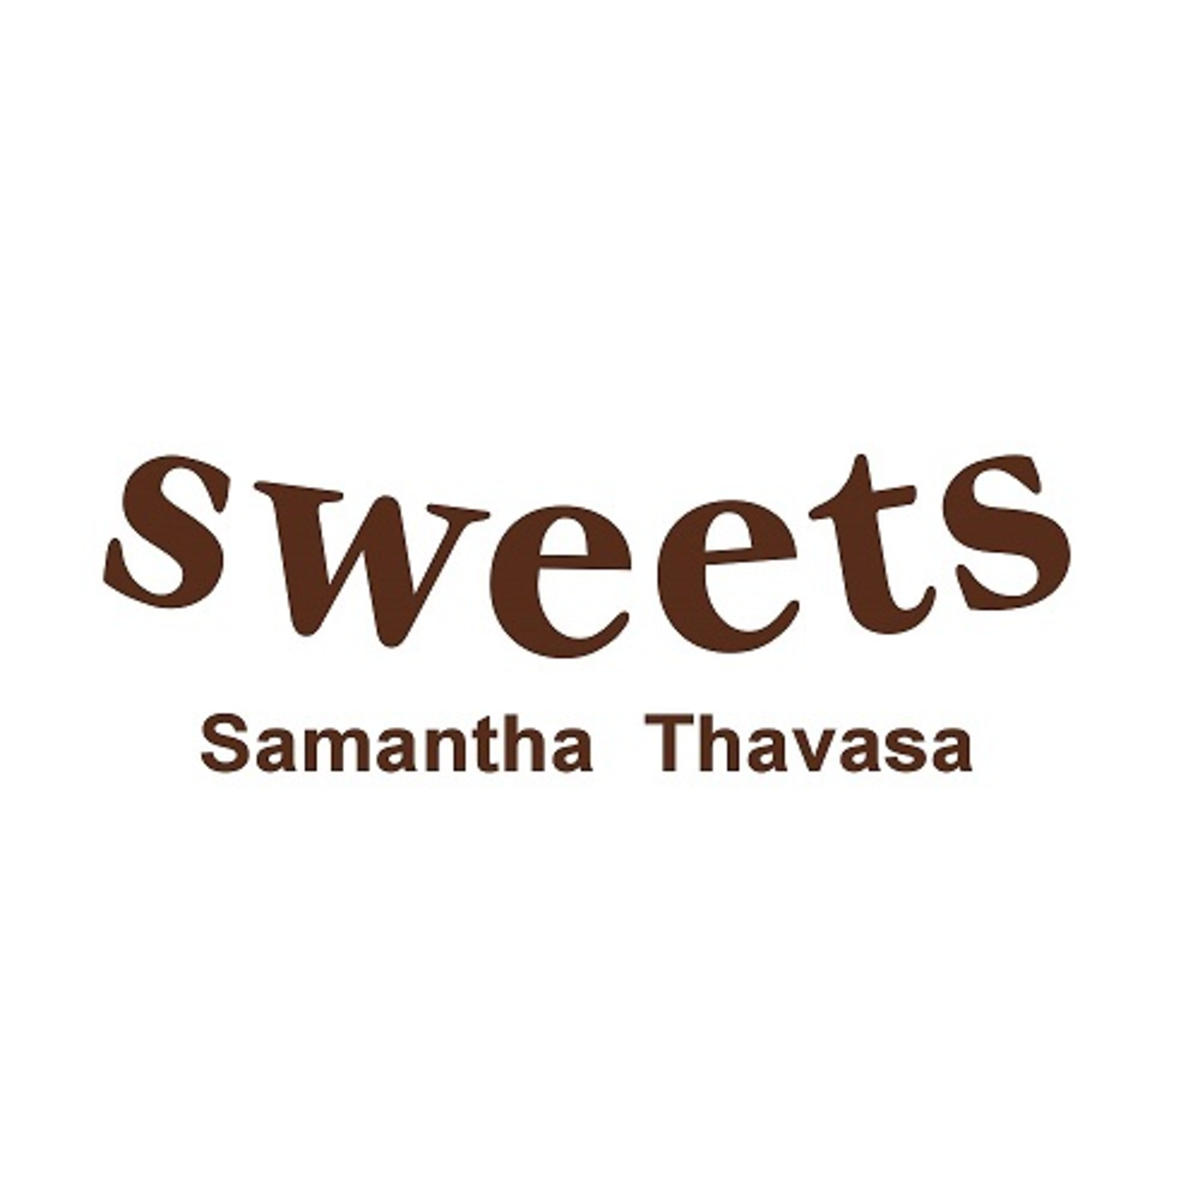 Samantha Thavasa sweets